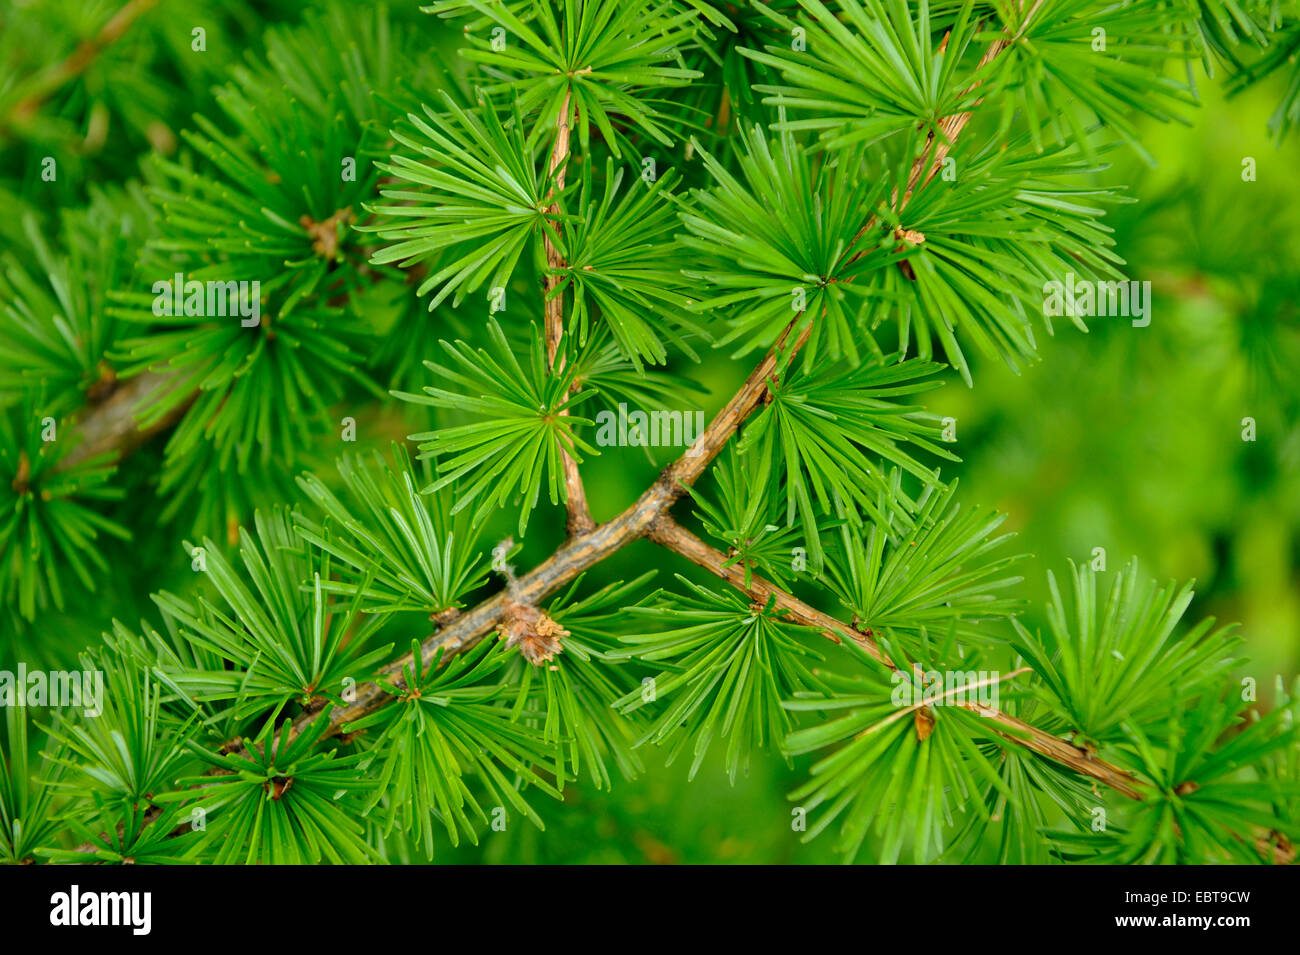 common larch, European larch (Larix decidua, Larix europaea), branch, Germany Stock Photo